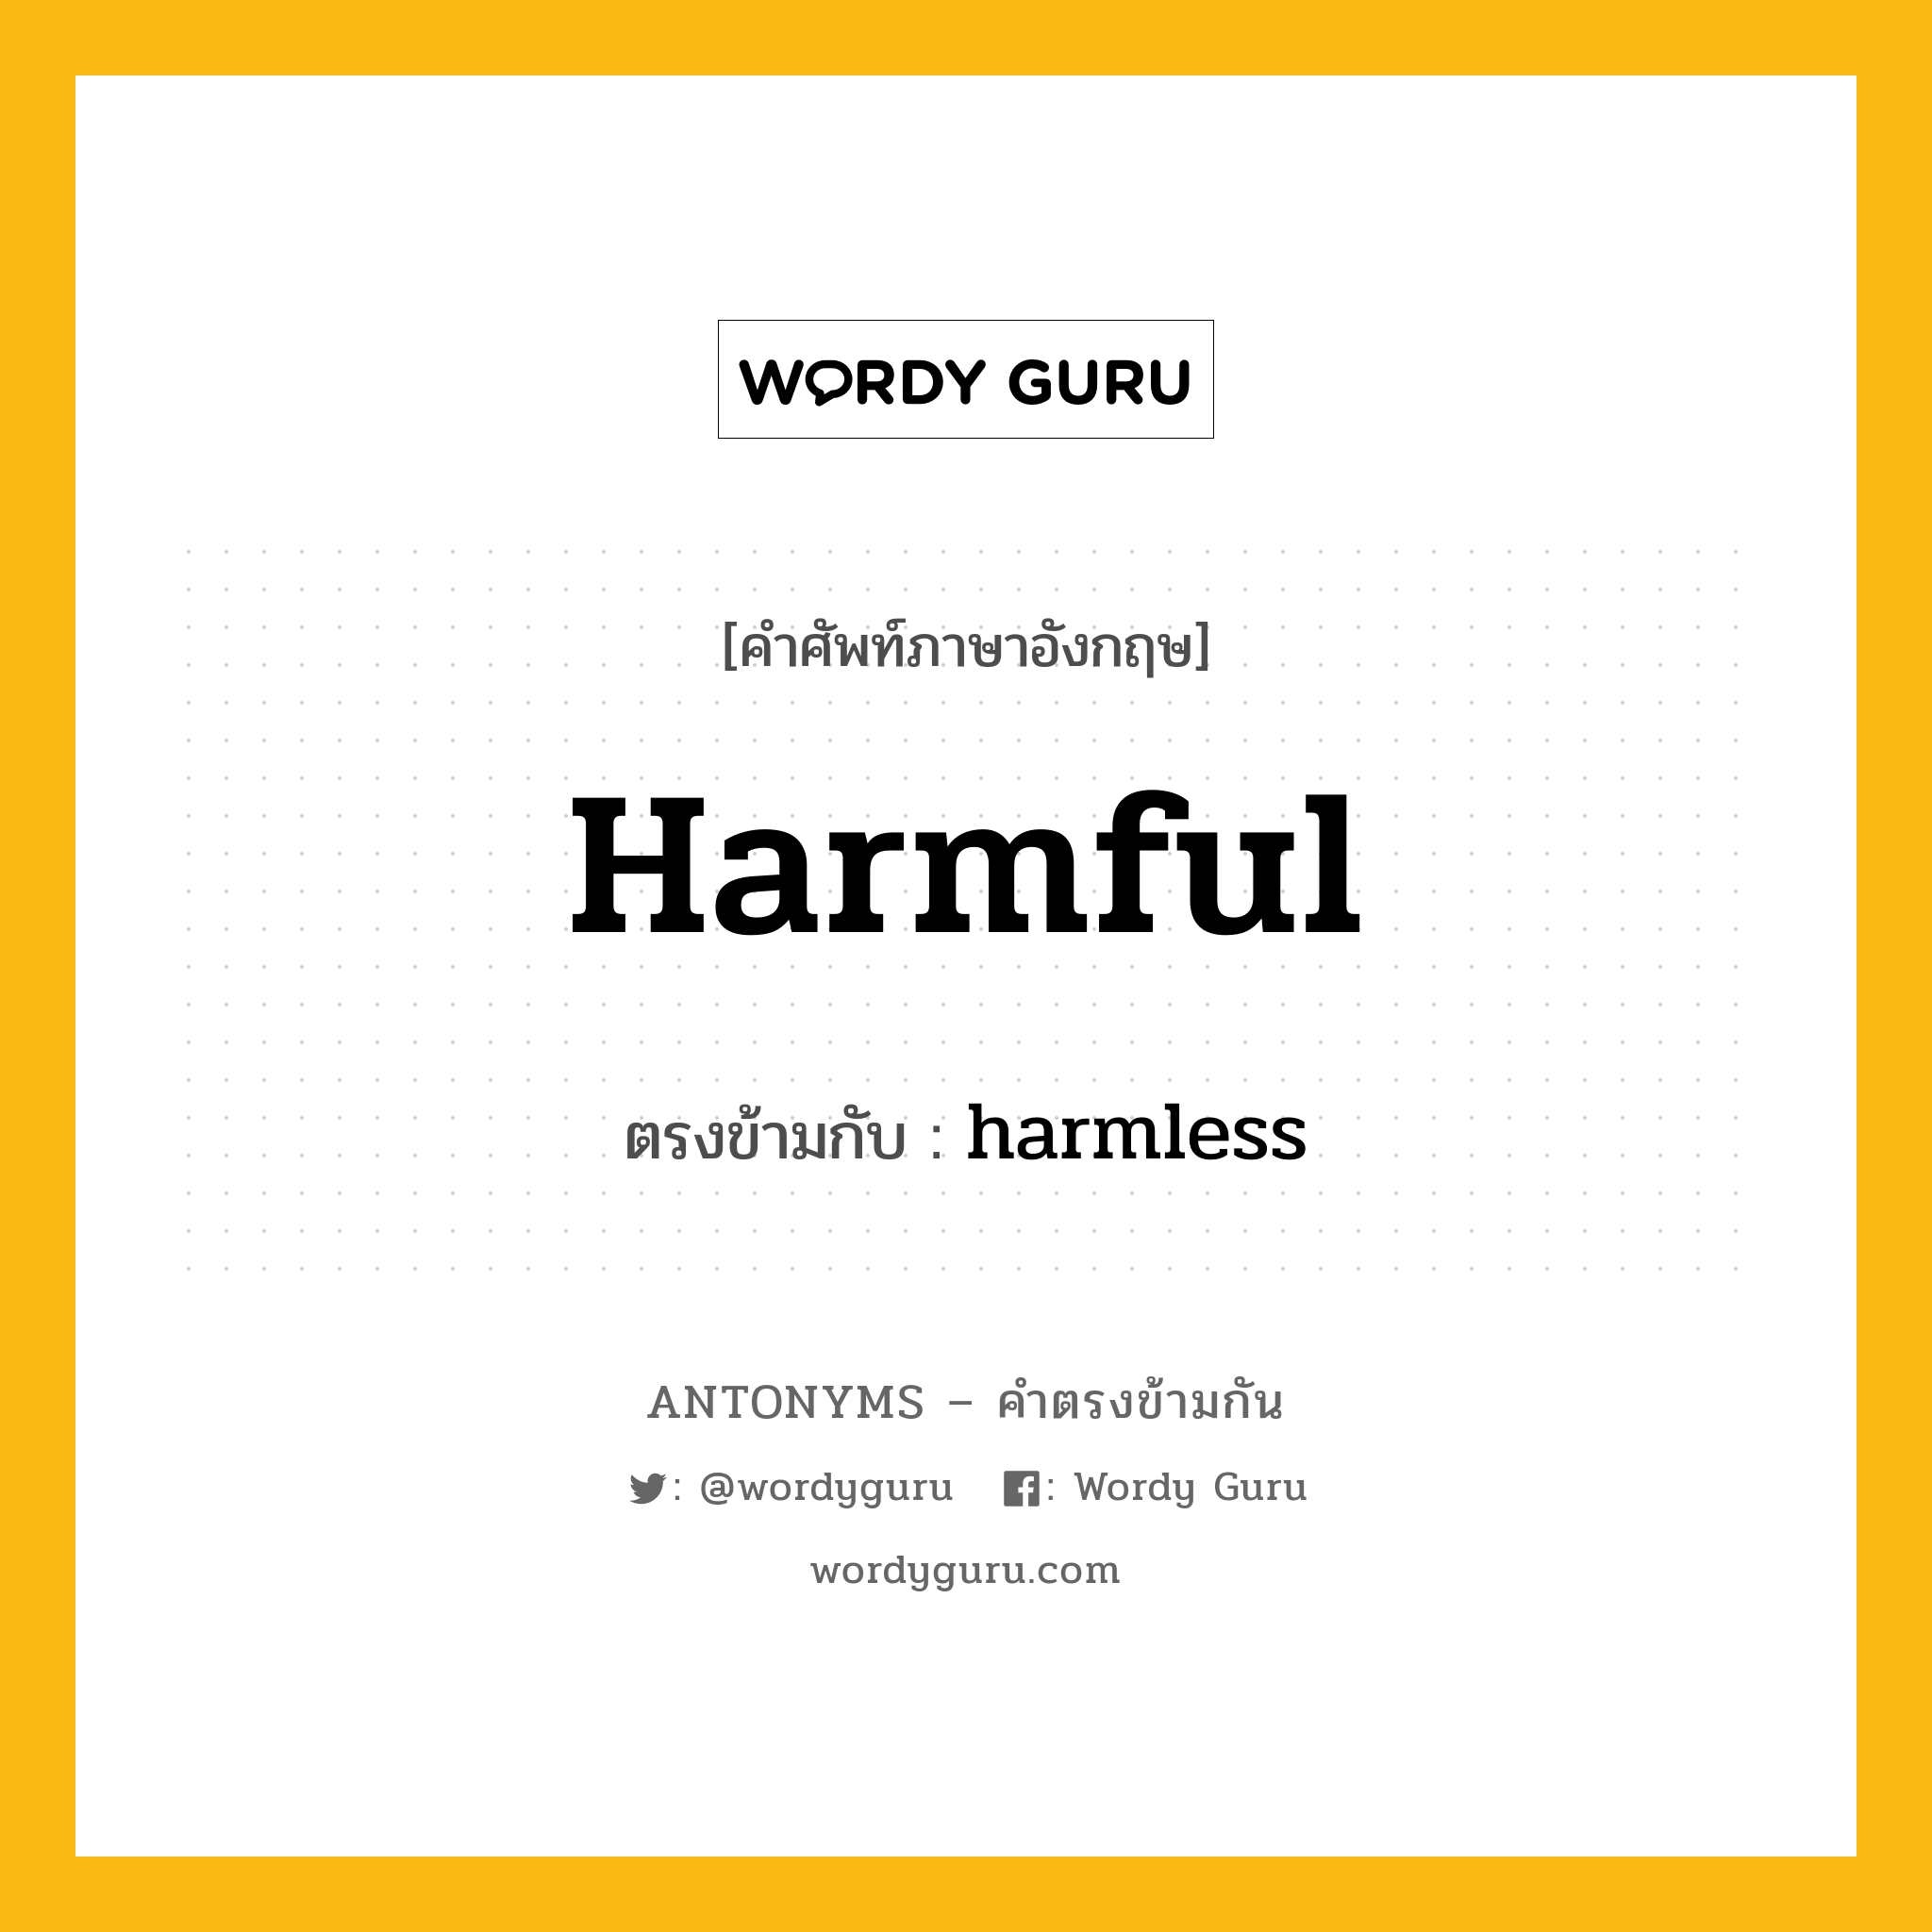 harmful เป็นคำตรงข้ามกับคำไหนบ้าง?, คำศัพท์ภาษาอังกฤษ harmful ตรงข้ามกับ harmless หมวด harmless